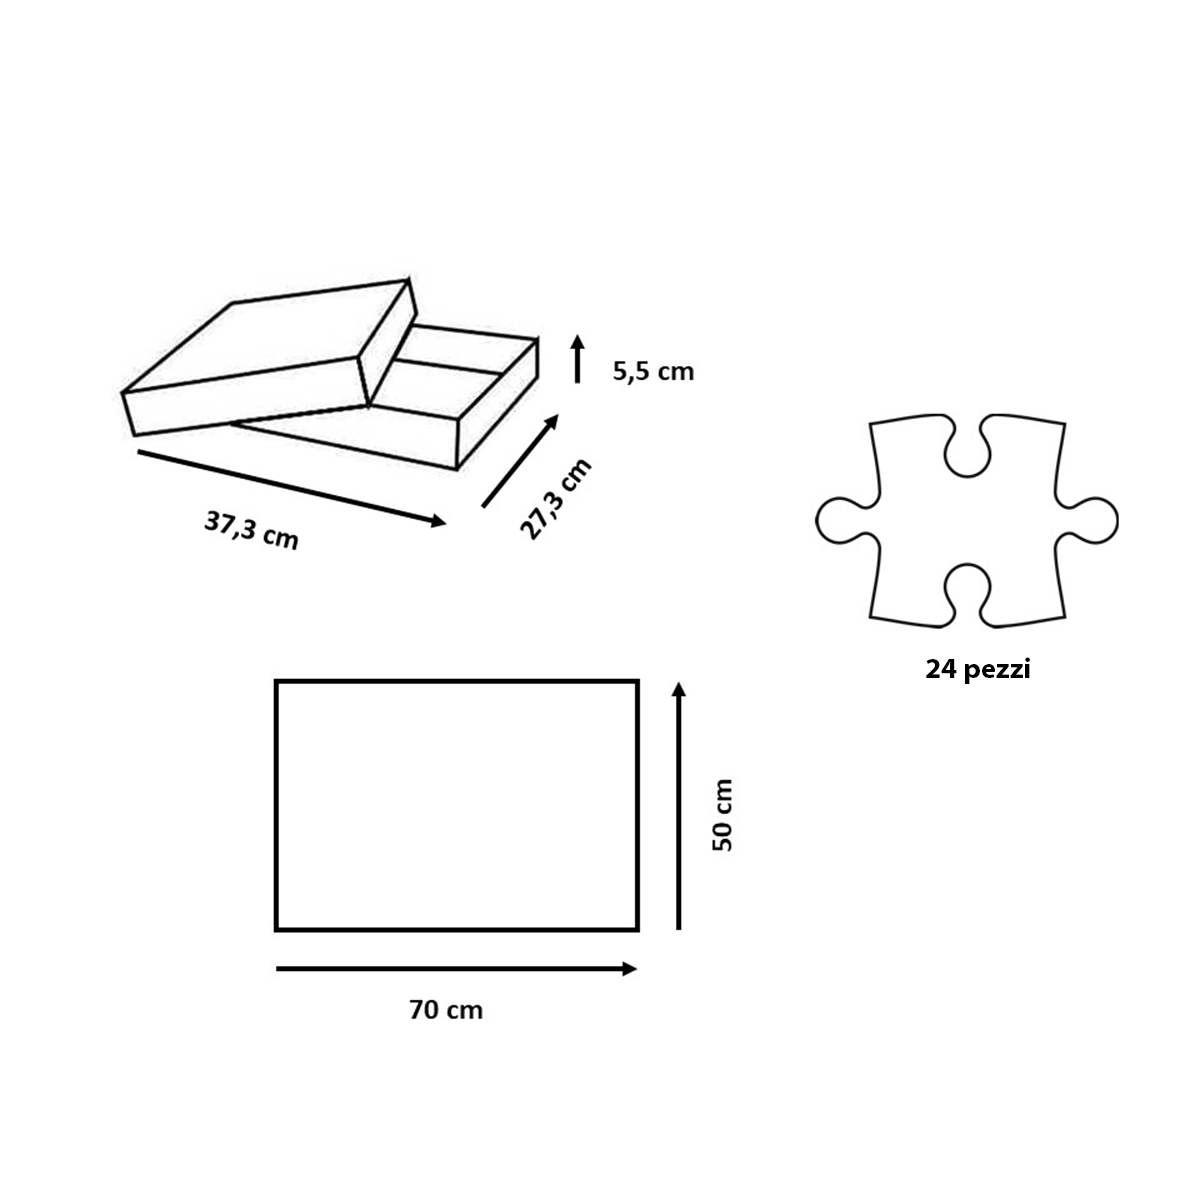 Ravensburger - puzzle 24 pezzi - formato giant – per bambini a partire dai 3 anni - pinocchio - 03124 - RAVENSBURGER